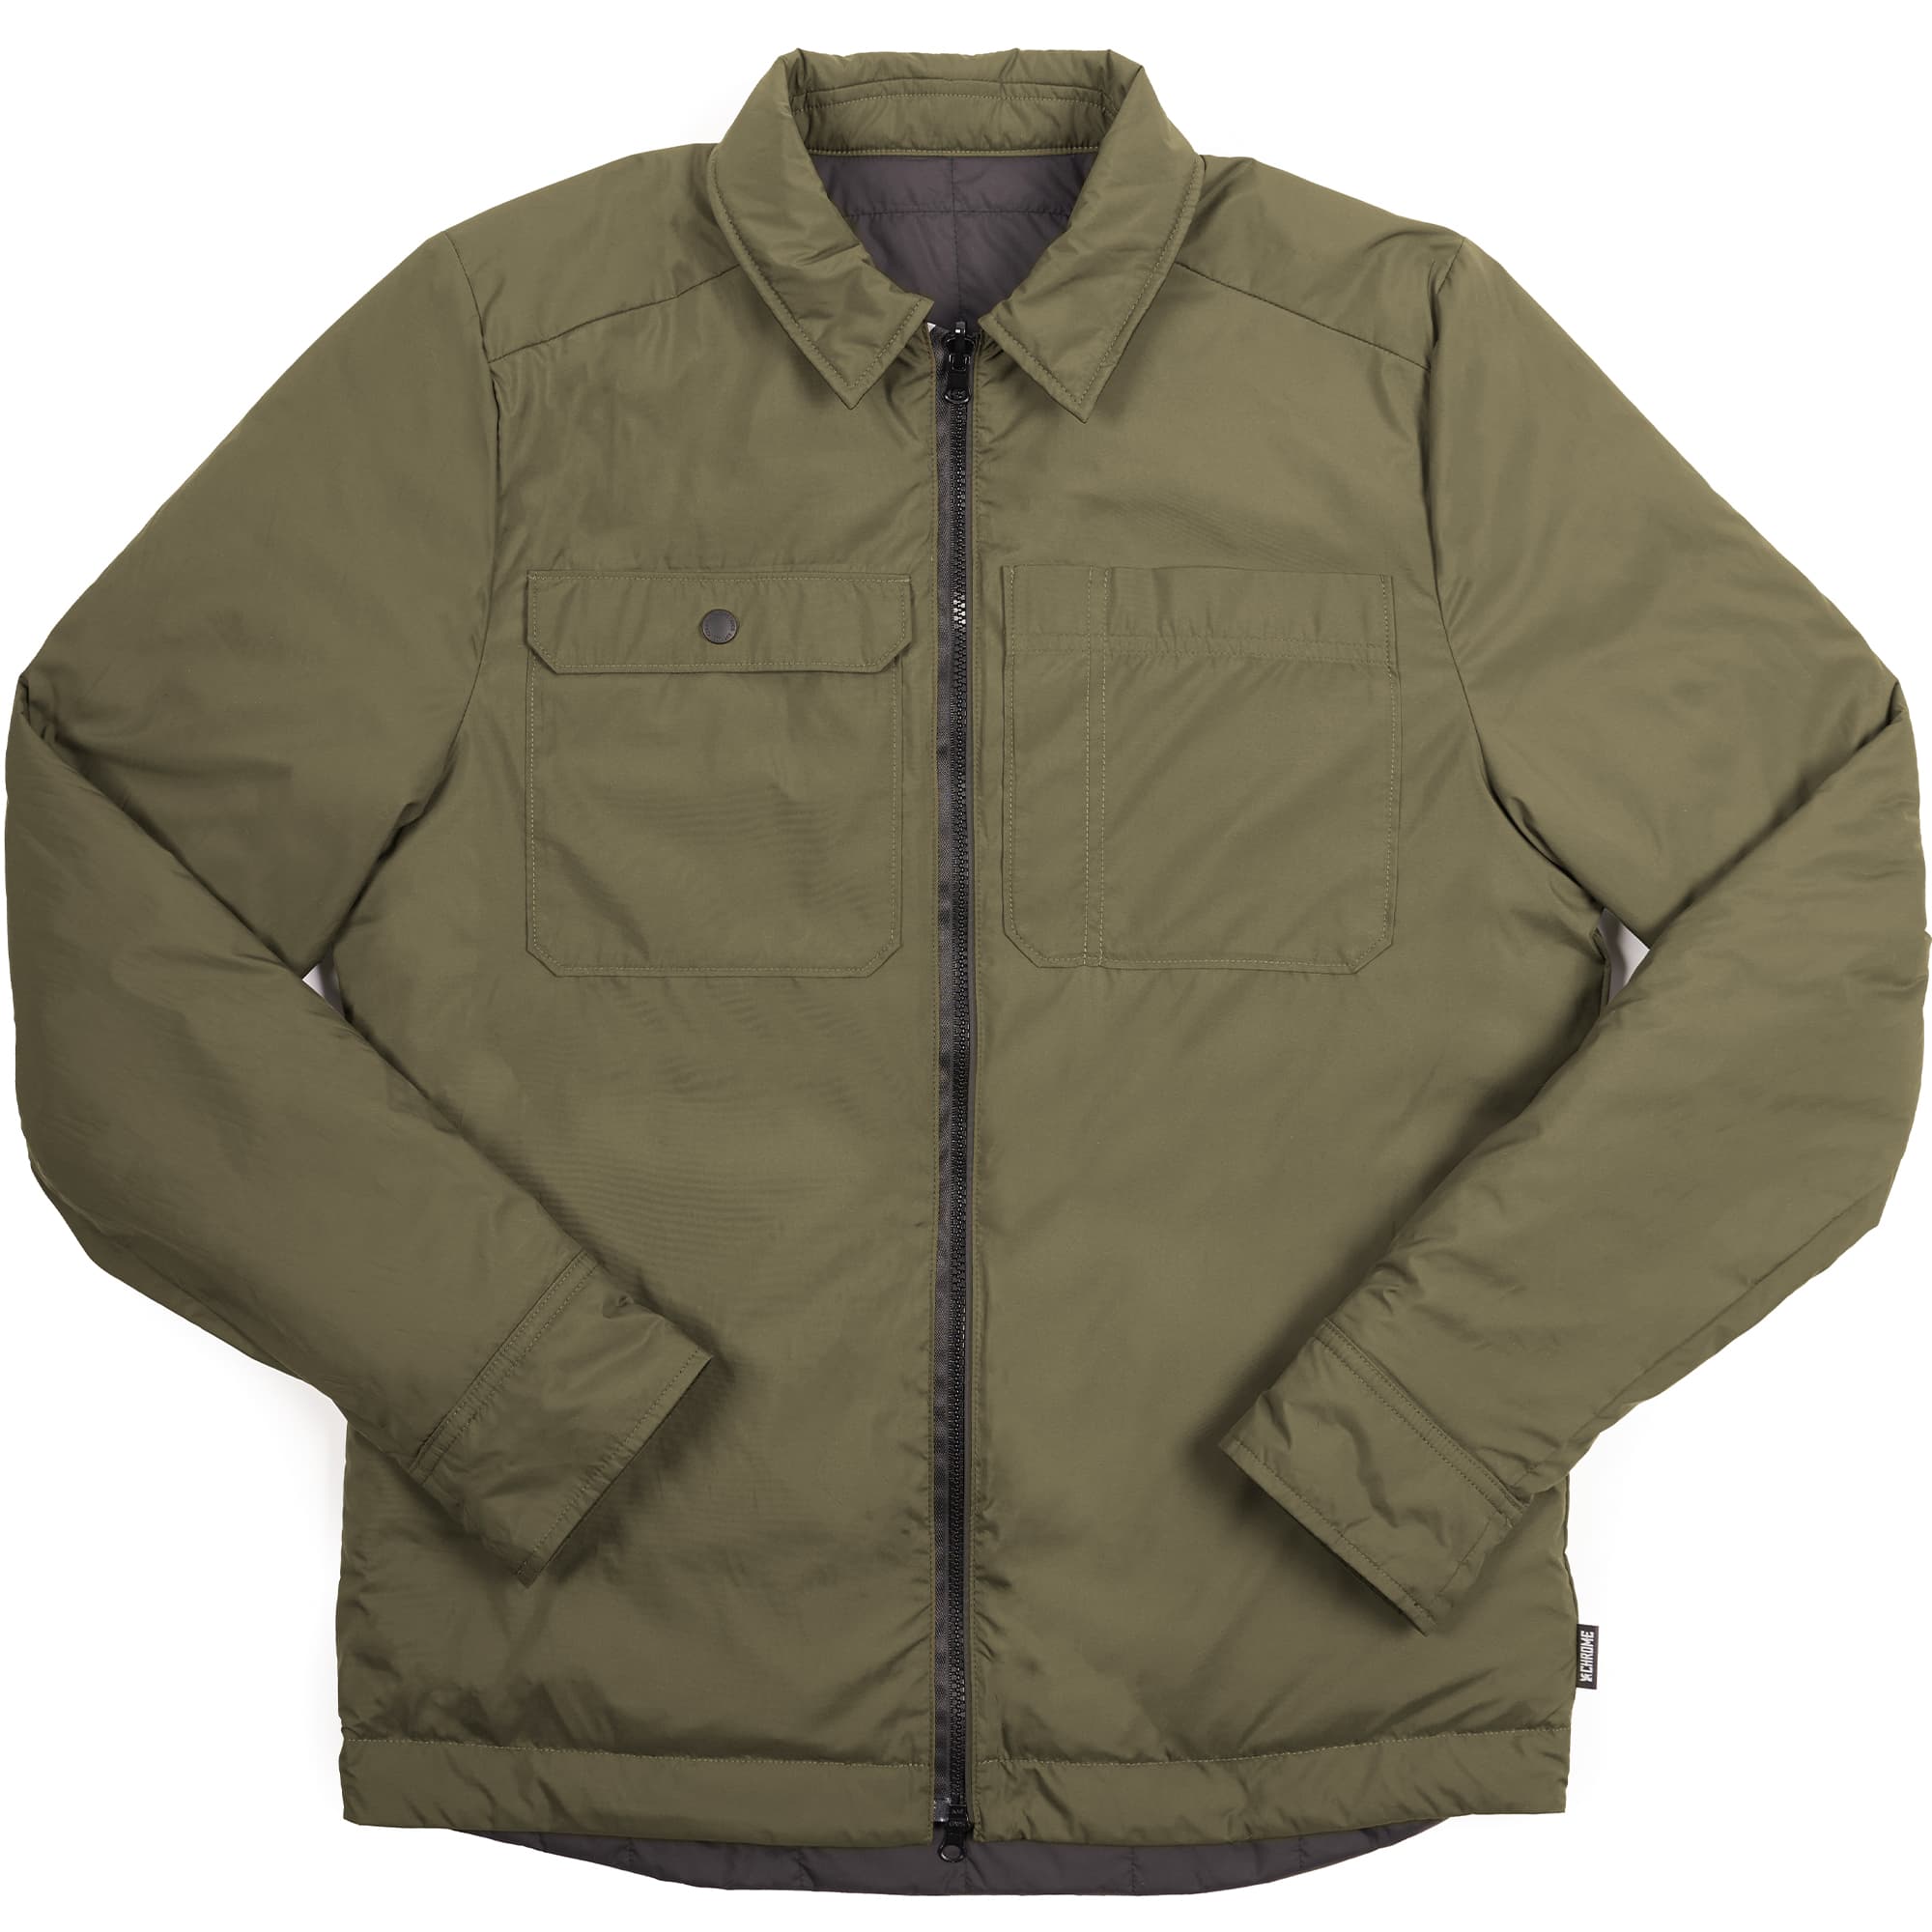 Men's Shirt Jackets & Shackets in linen on sale | FASHIOLA.in